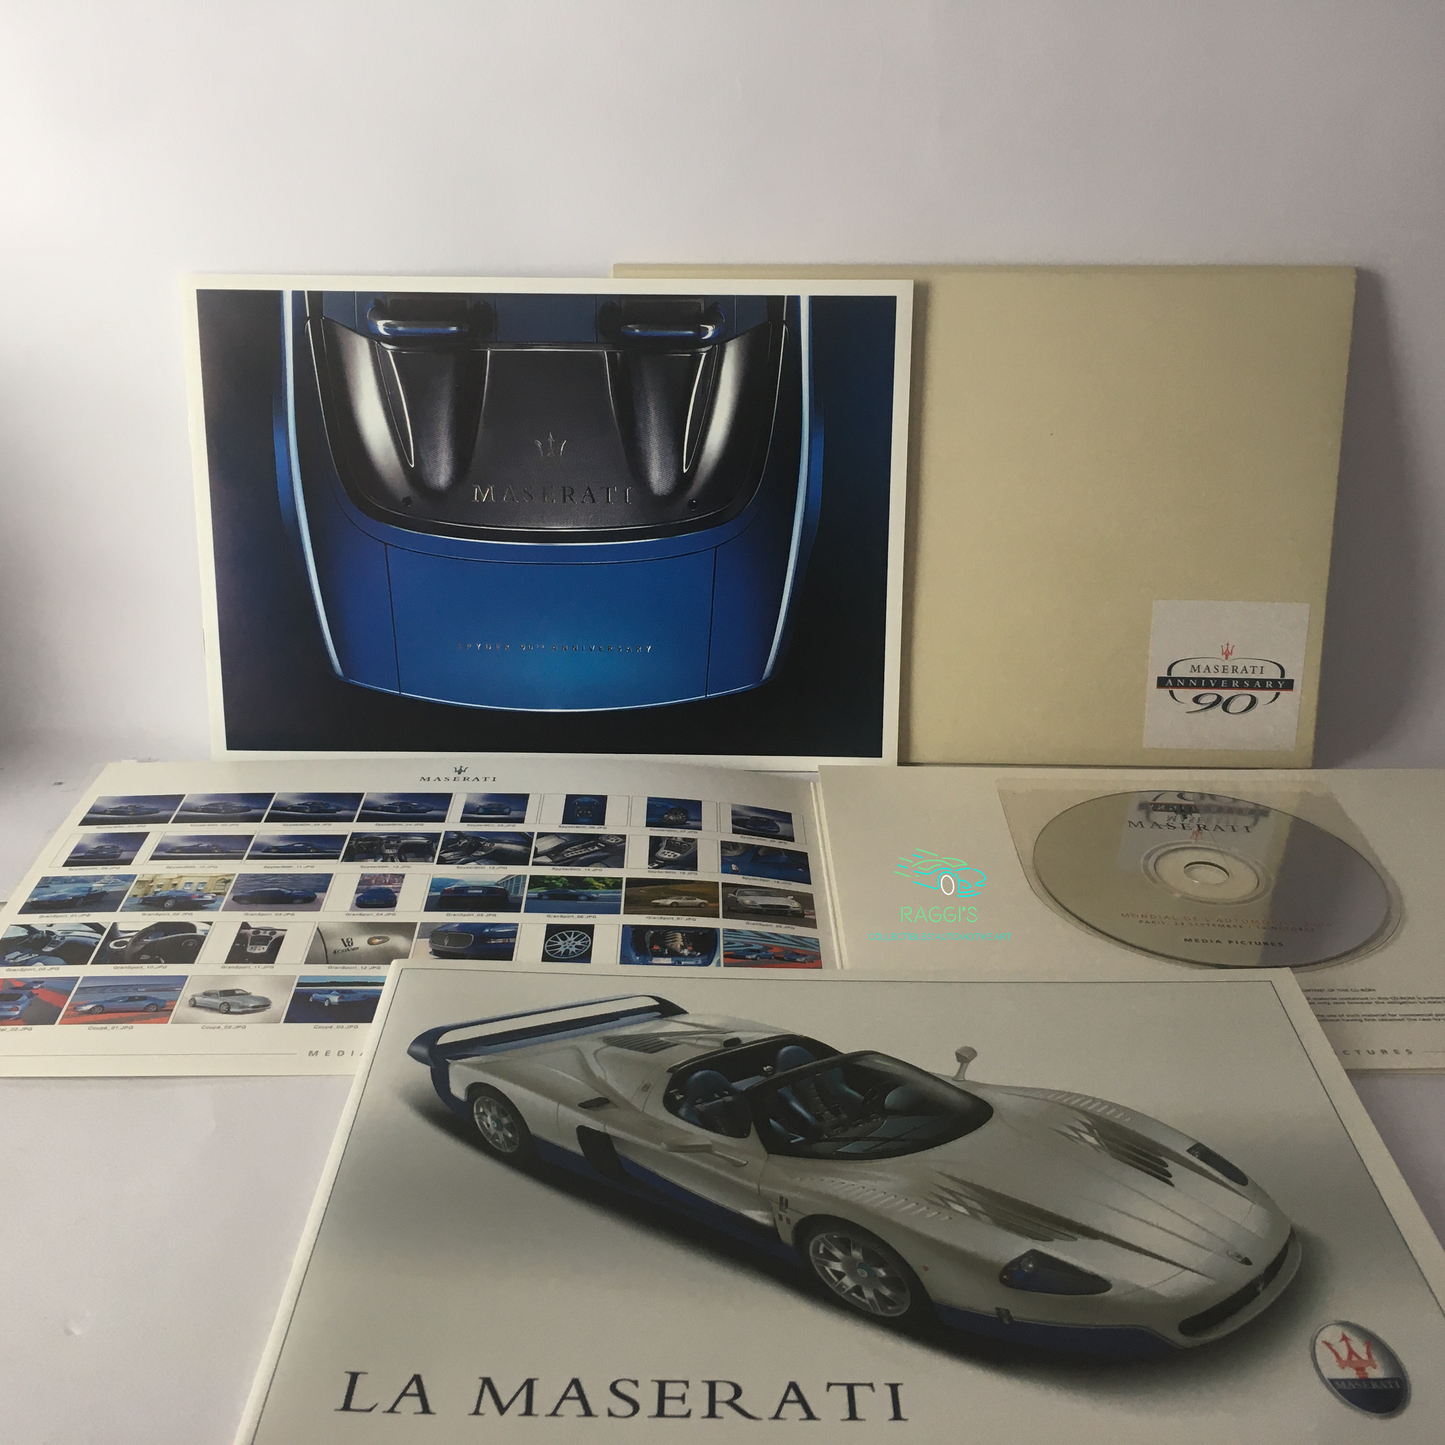 Maserati, Press Kit Maserati Spyder 90 Anniversario Salone dell'Automobile di Parigi 2004 Italiano Inglese